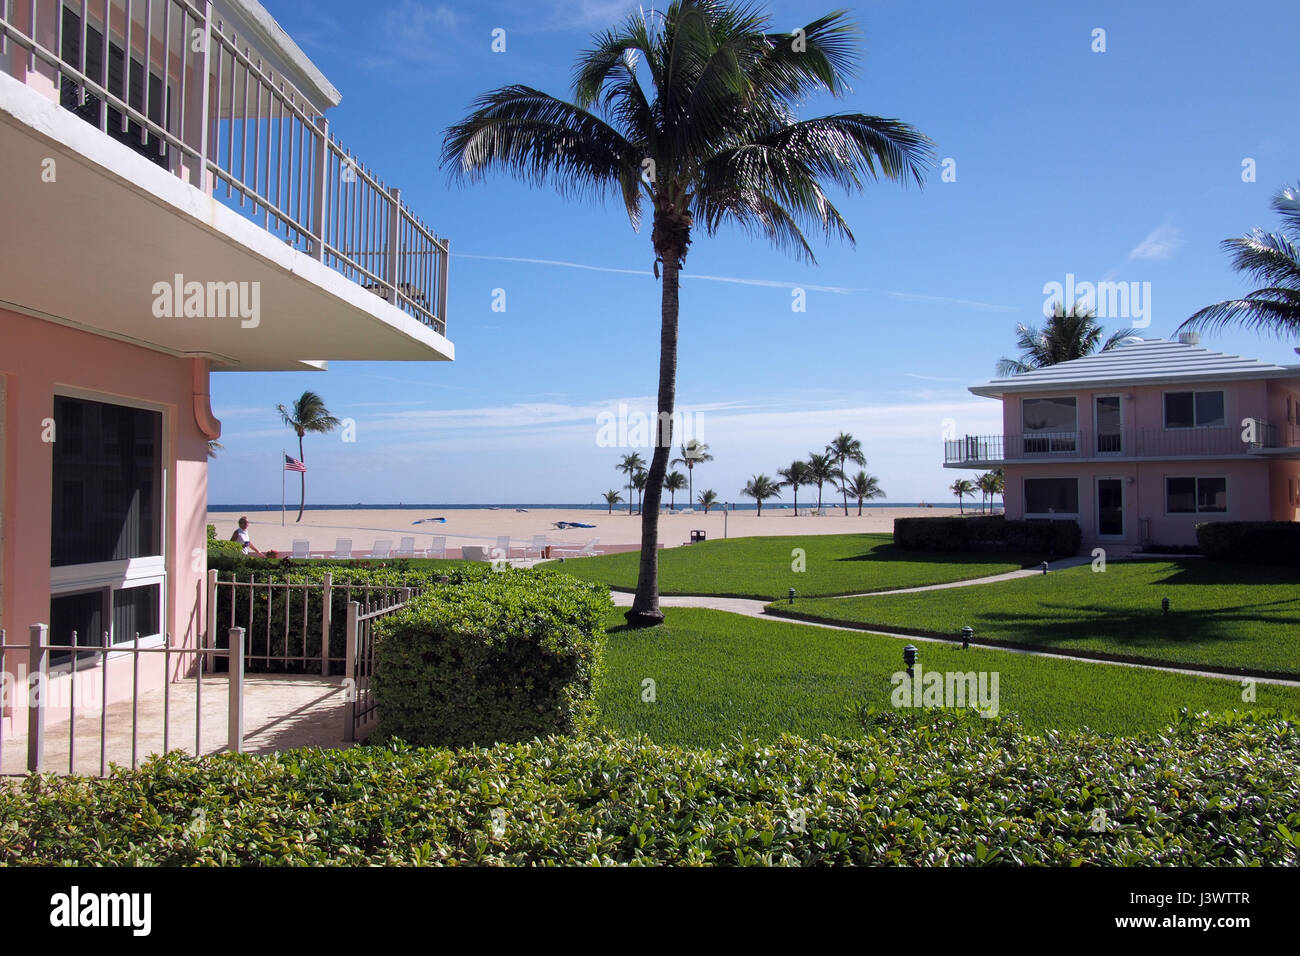 Ocean Lane ville sulla spiaggia appartamento condominio complesso in Fort Lauderdale, Florida, Stati Uniti d'America Foto Stock